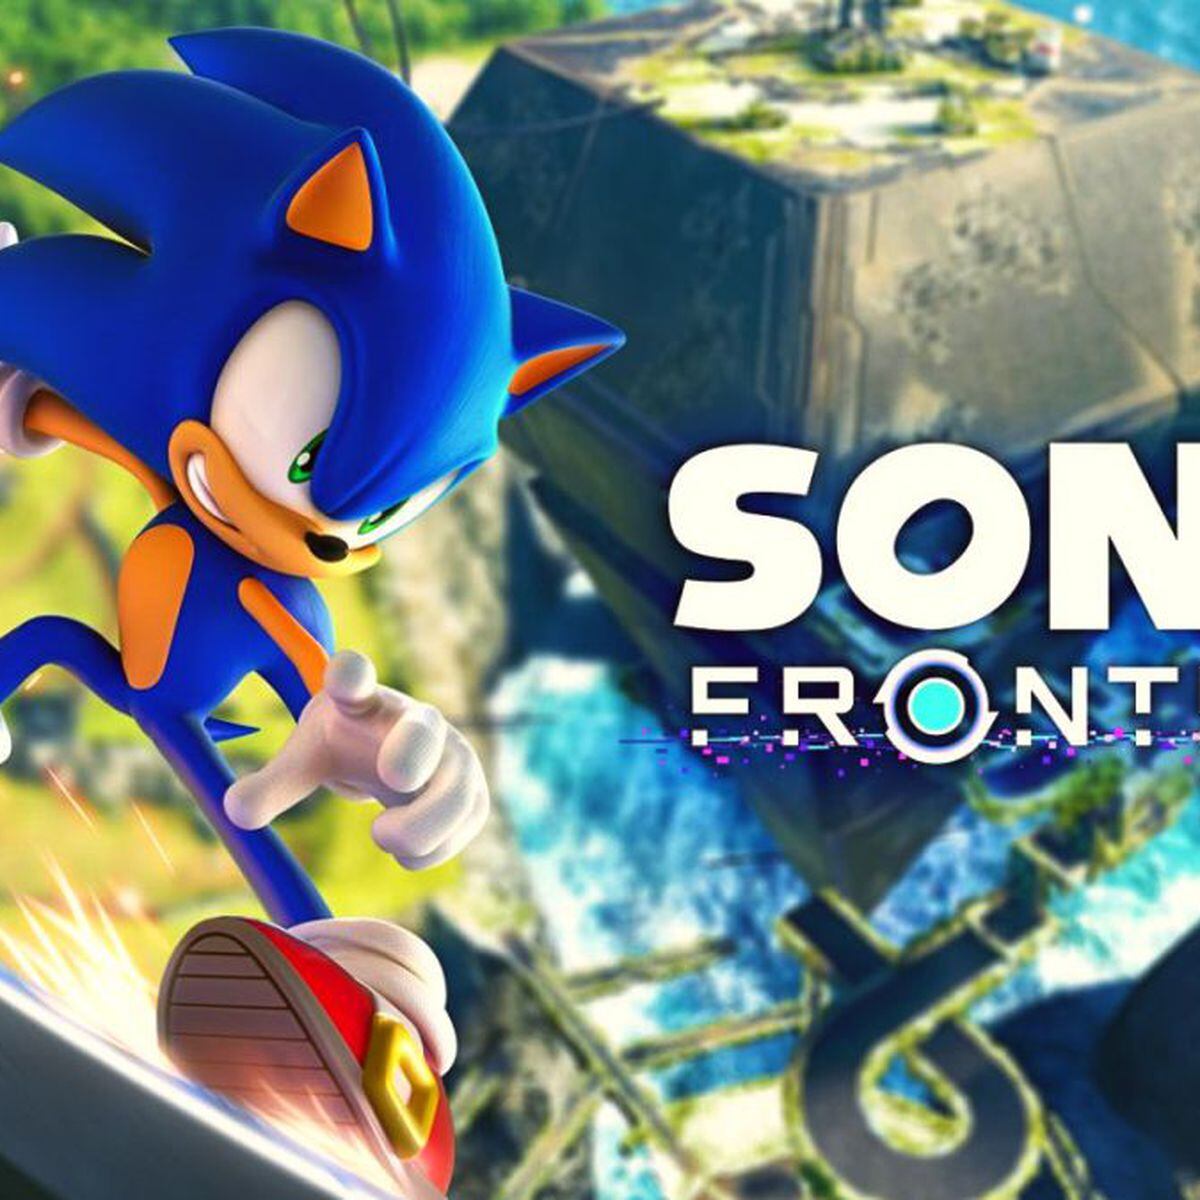 Cuánto tuvo Sonic Frontiers de nota media en Metacritic?